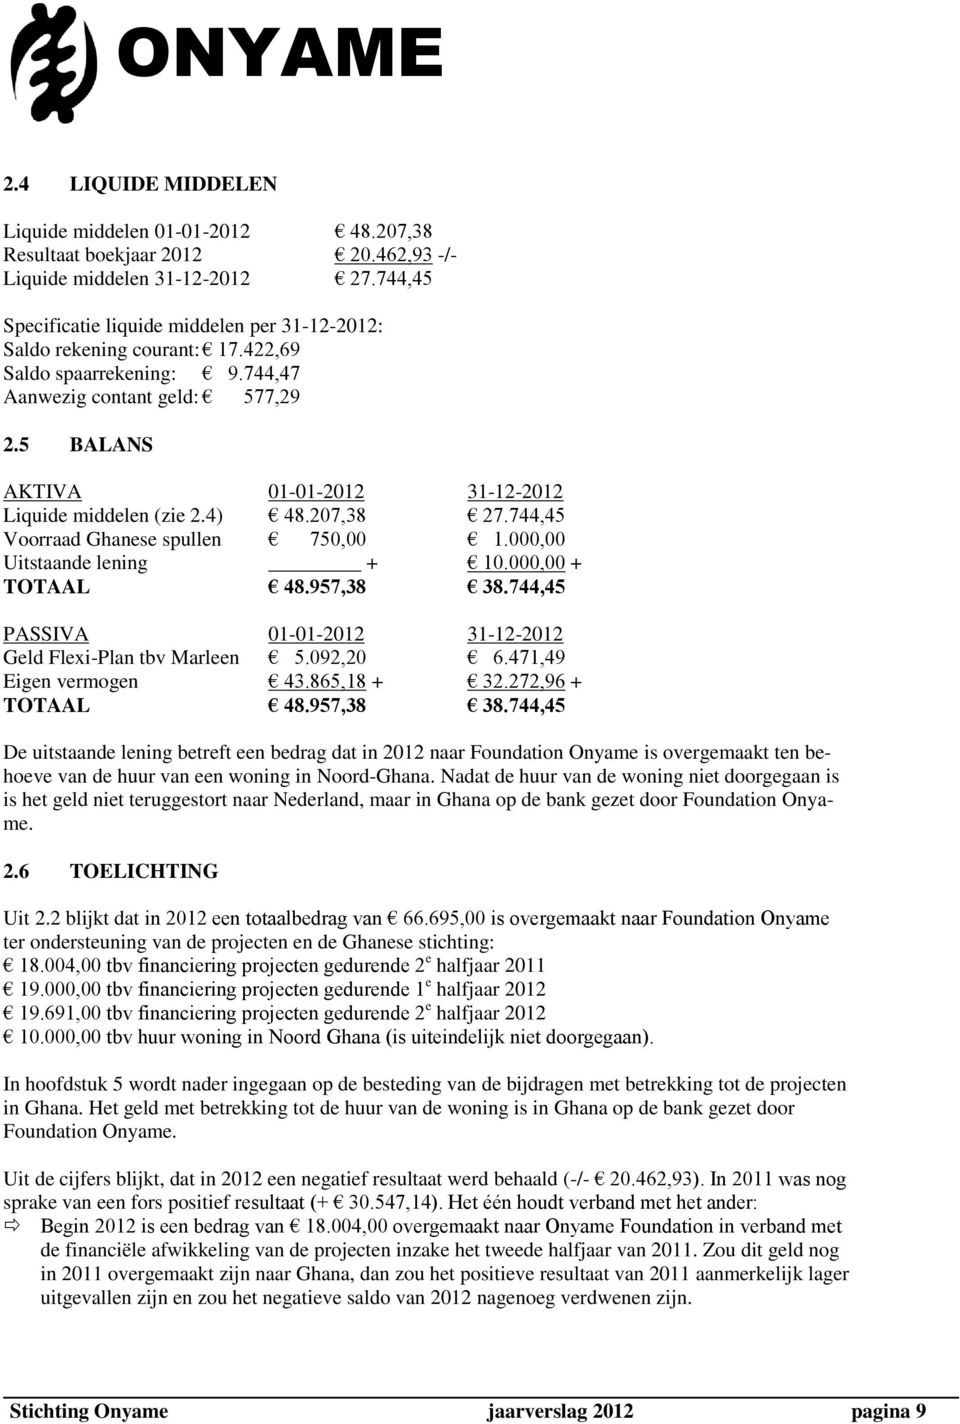 5 BALANS AKTIVA 01-01-2012 31-12-2012 Liquide middelen (zie 2.4) 48.207,38 27.744,45 Voorraad Ghanese spullen 750,00 1.000,00 Uitstaande lening + 10.000,00 + TOTAAL 48.957,38 38.